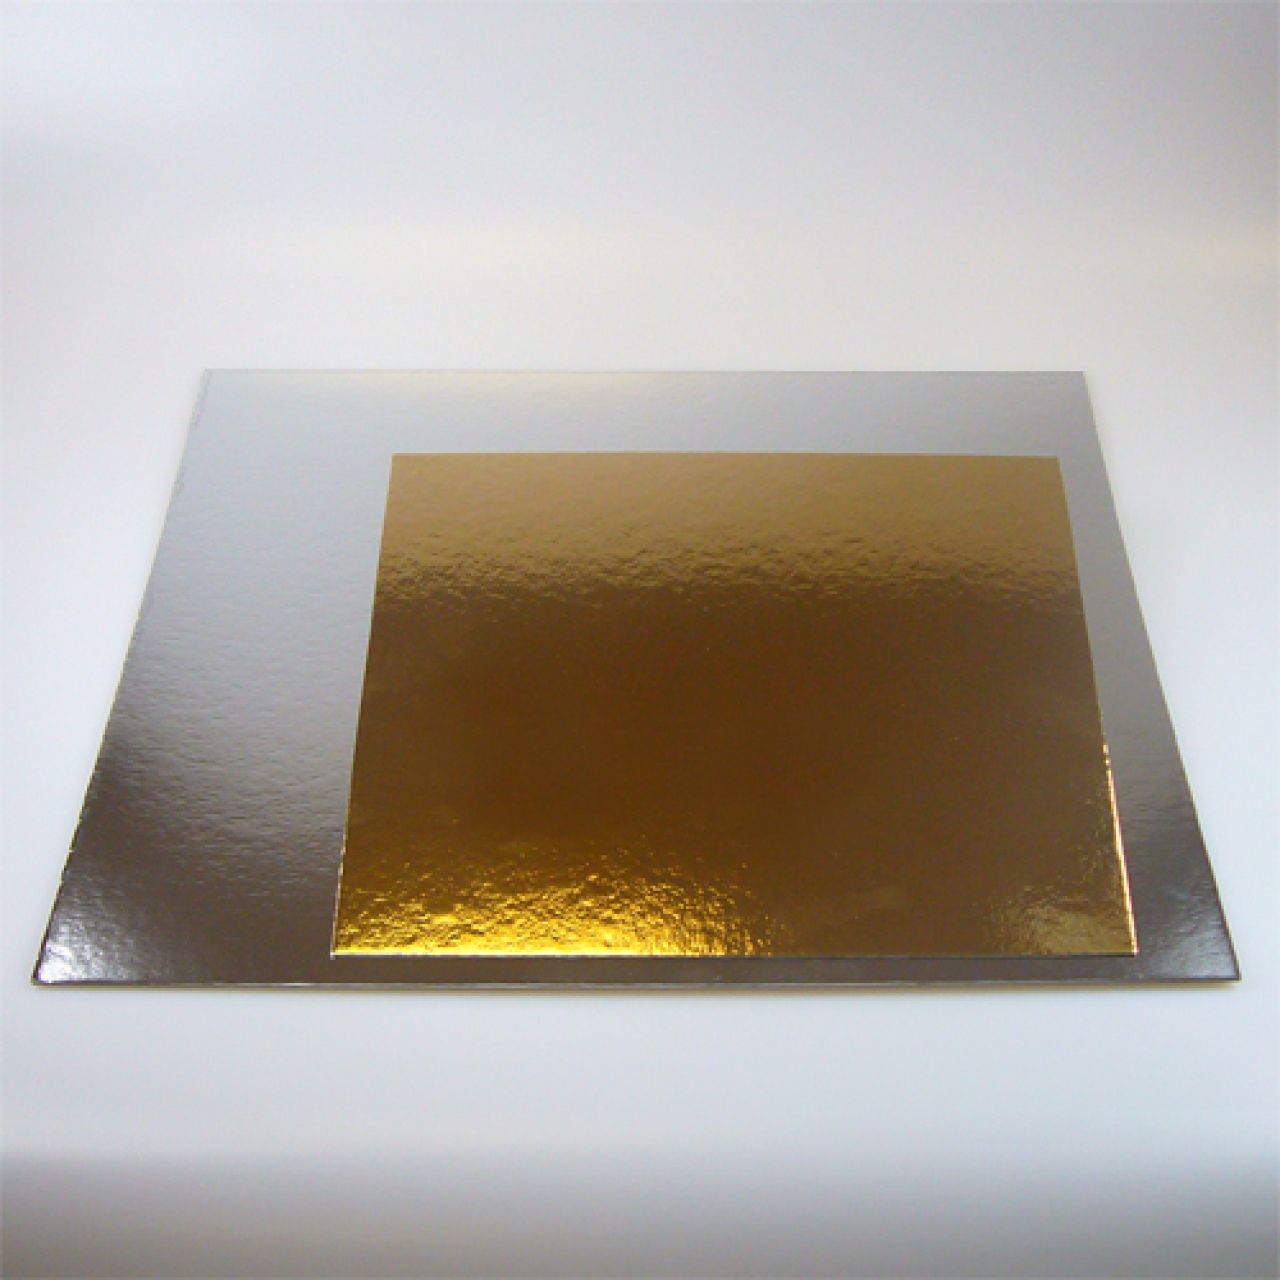 Tortenscheibe, Tortenboden gold & silber (beideseitig) 35,5 cm, quadrat, 3 Stk.